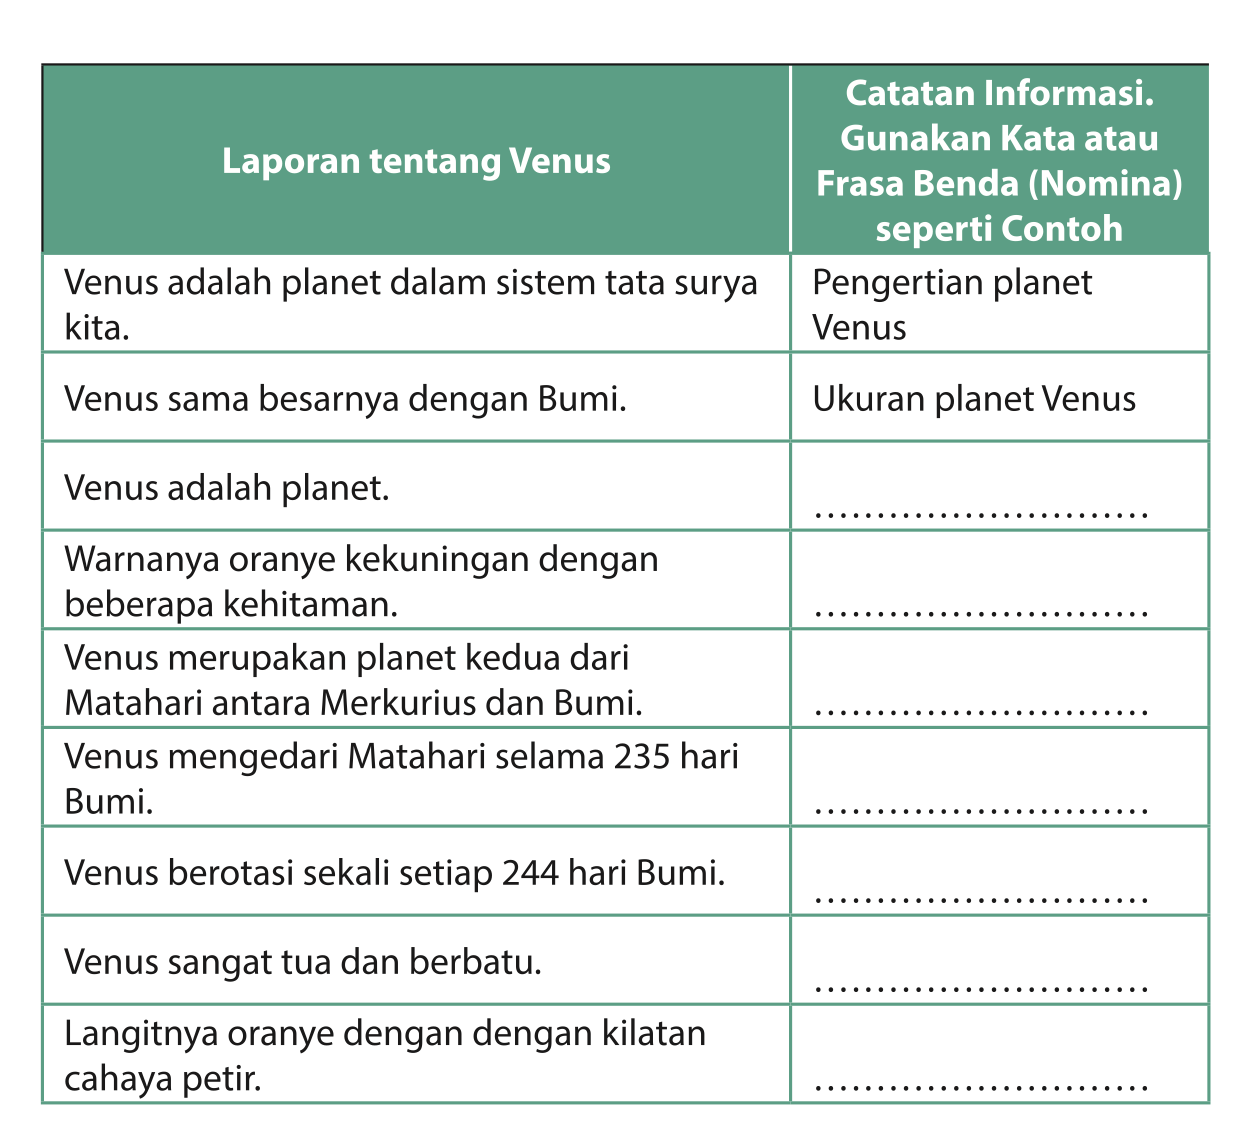 Soal Bahasa Indonesia Kelas 9 Halaman 14, 15, 16